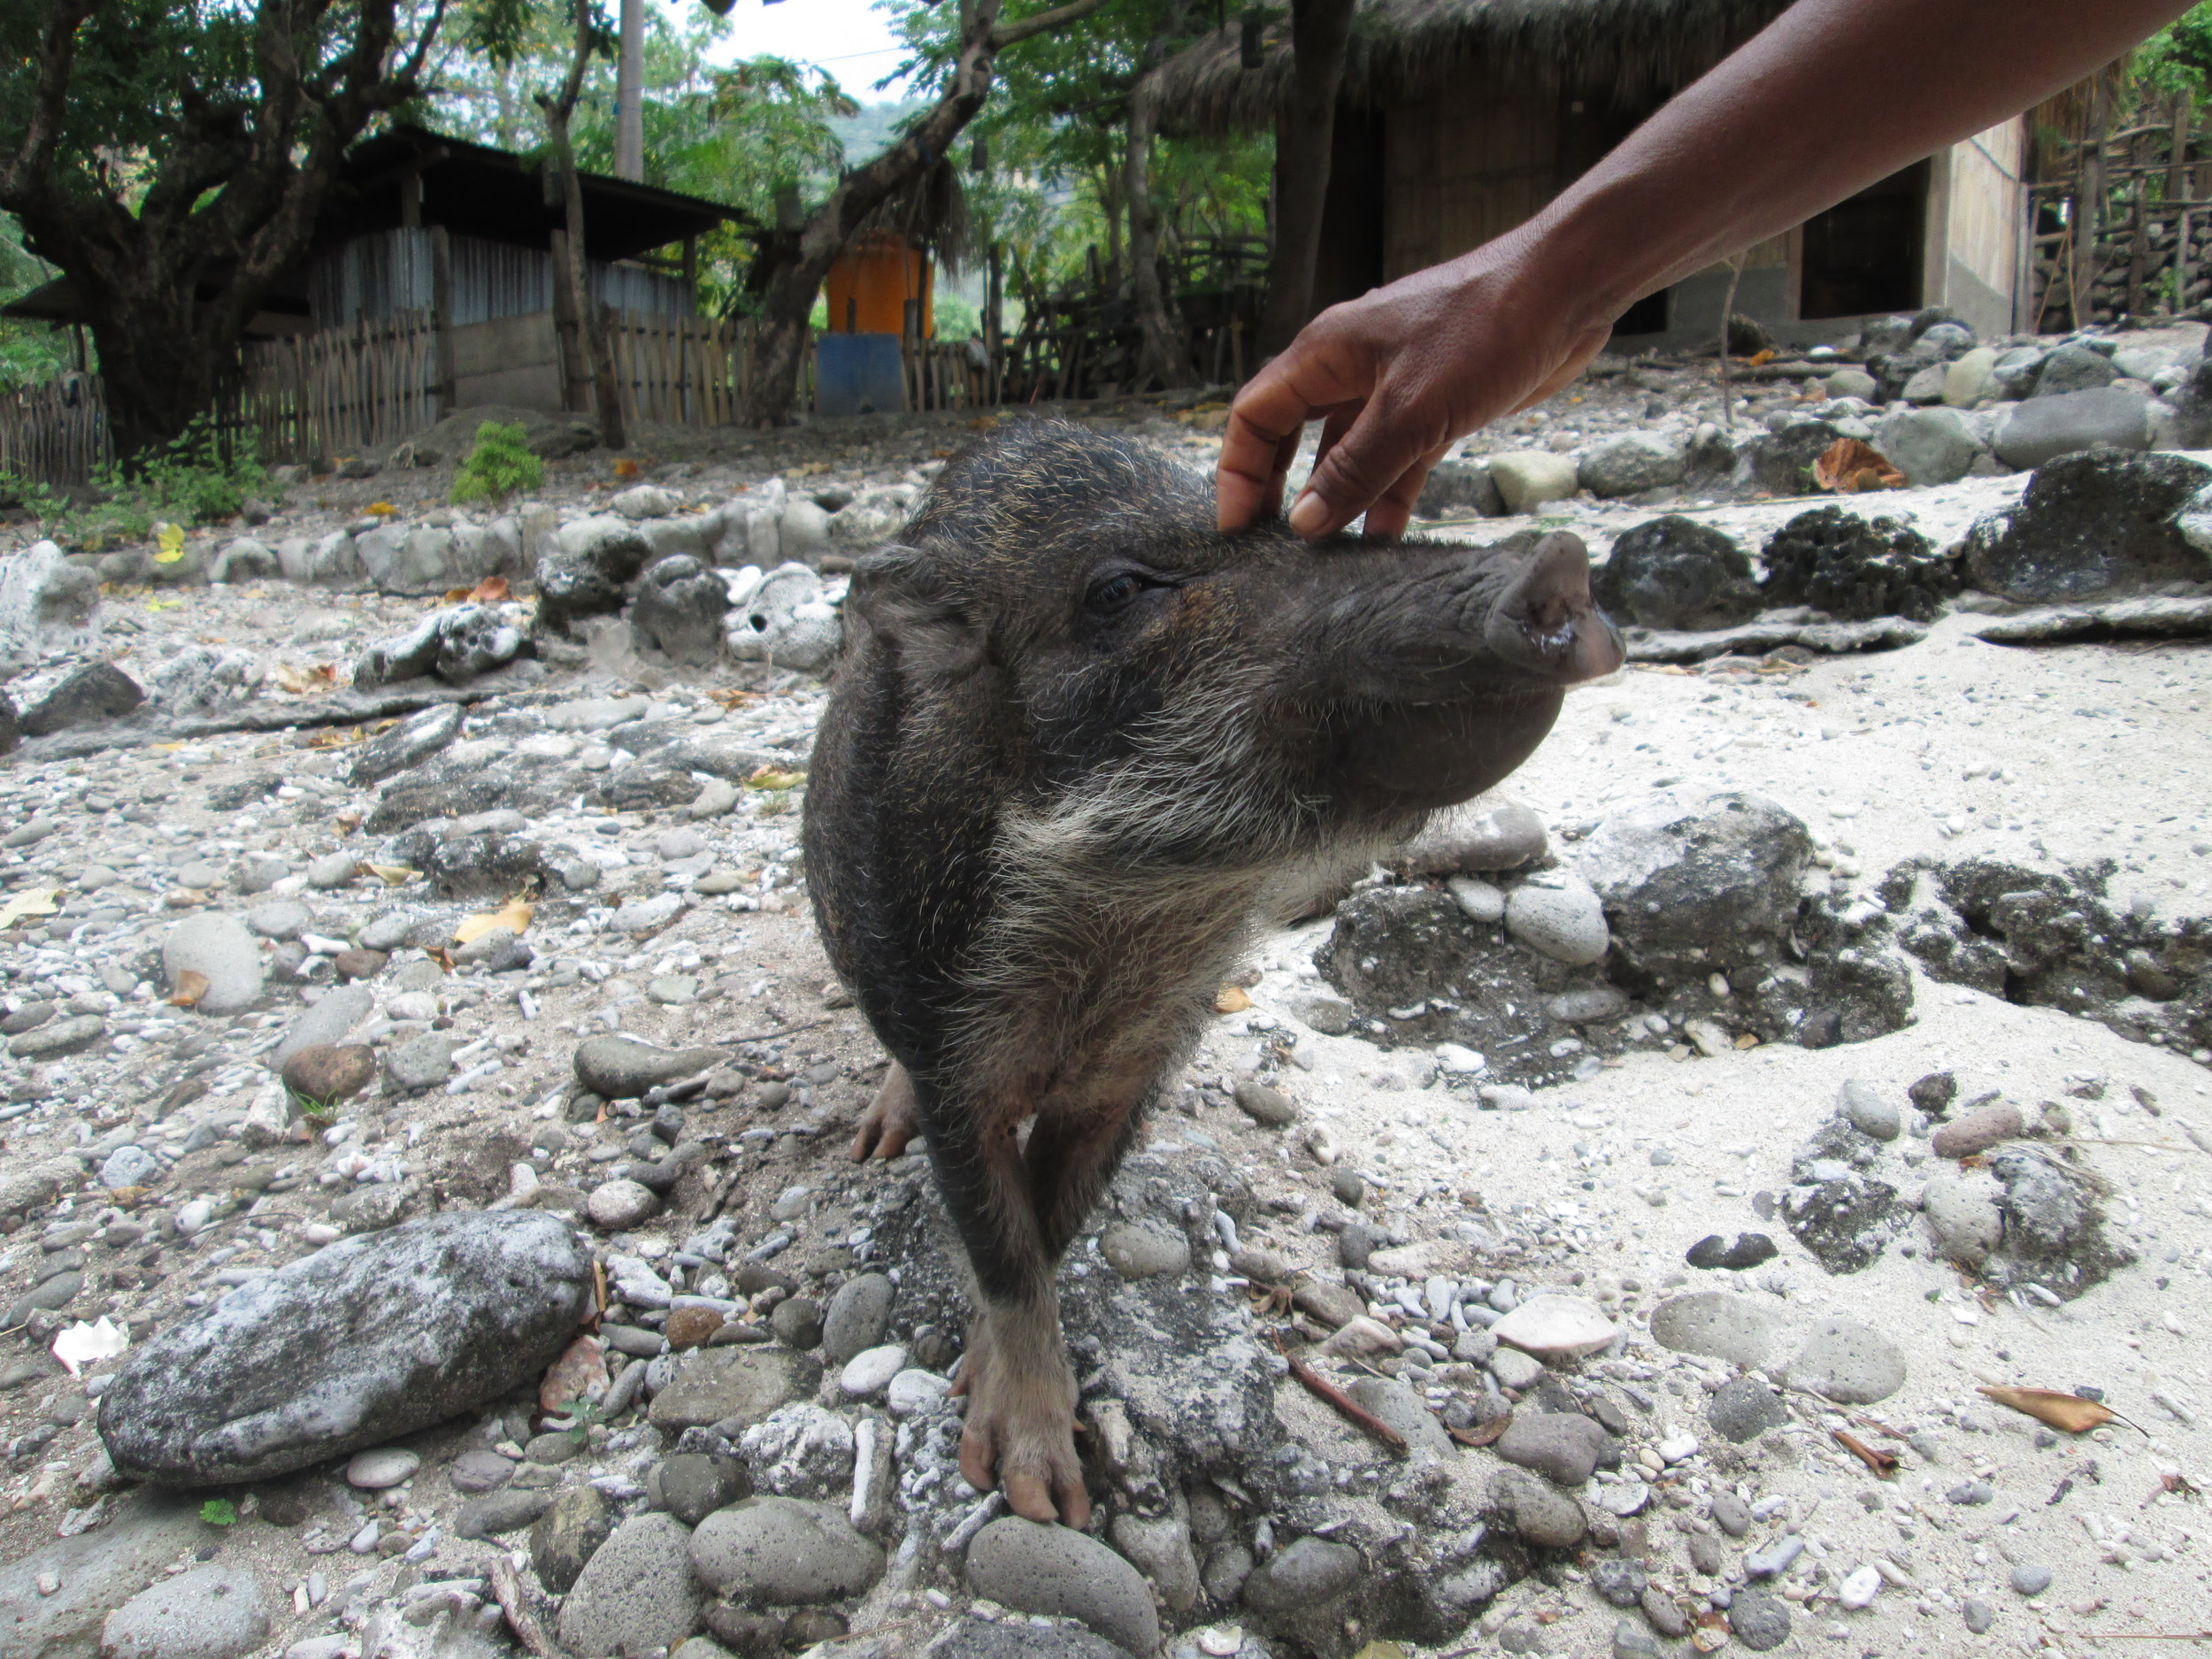 Wild pig of Timor-Leste